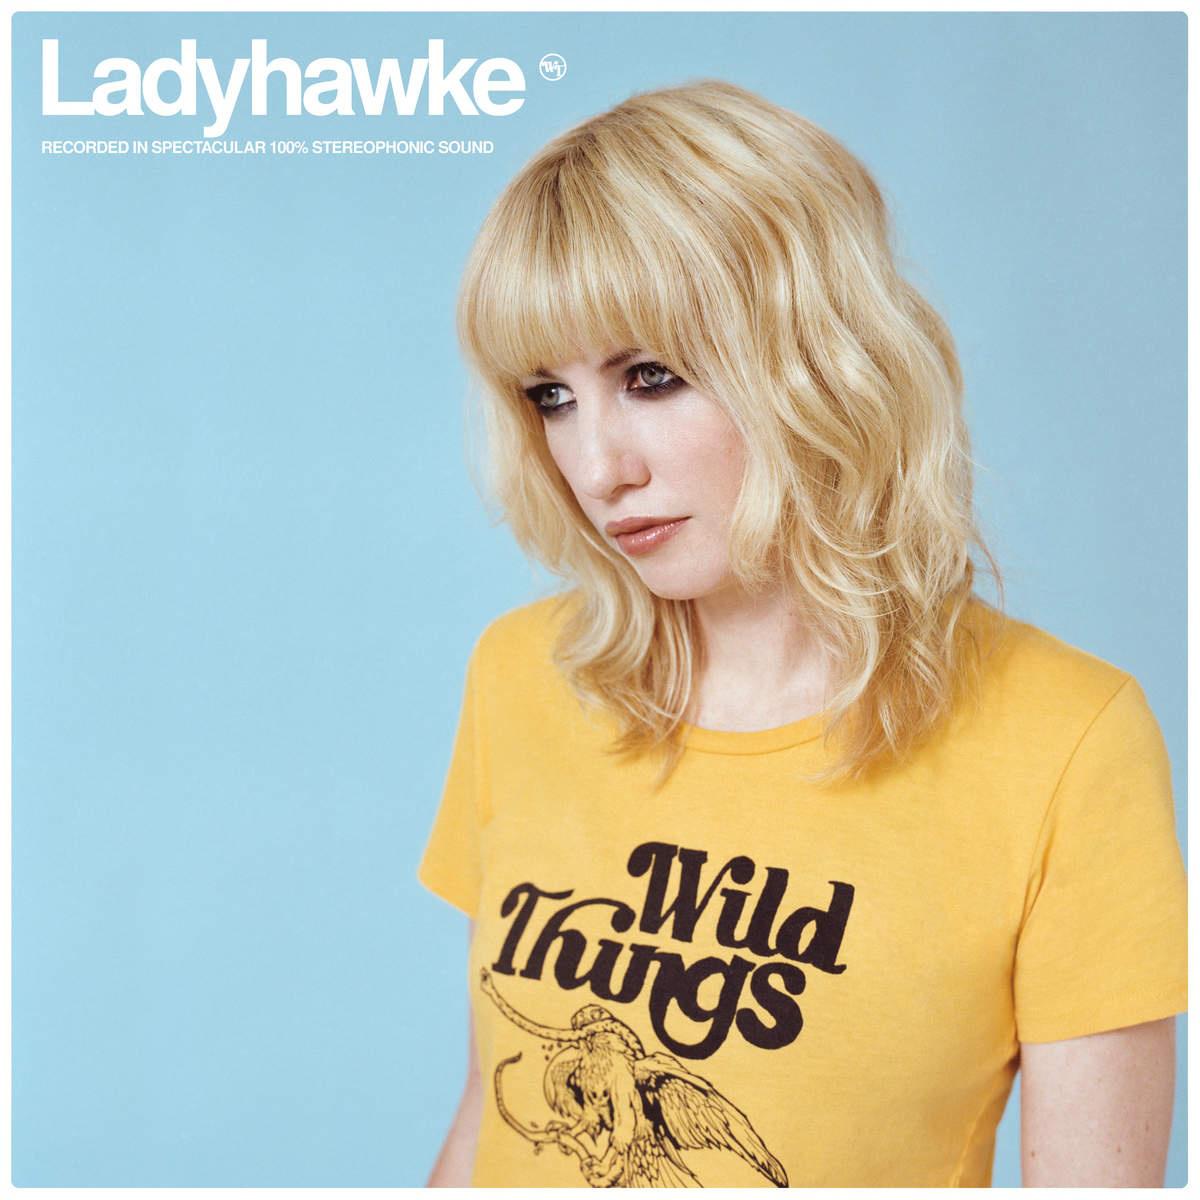 Ladyhawke - Golden Girl